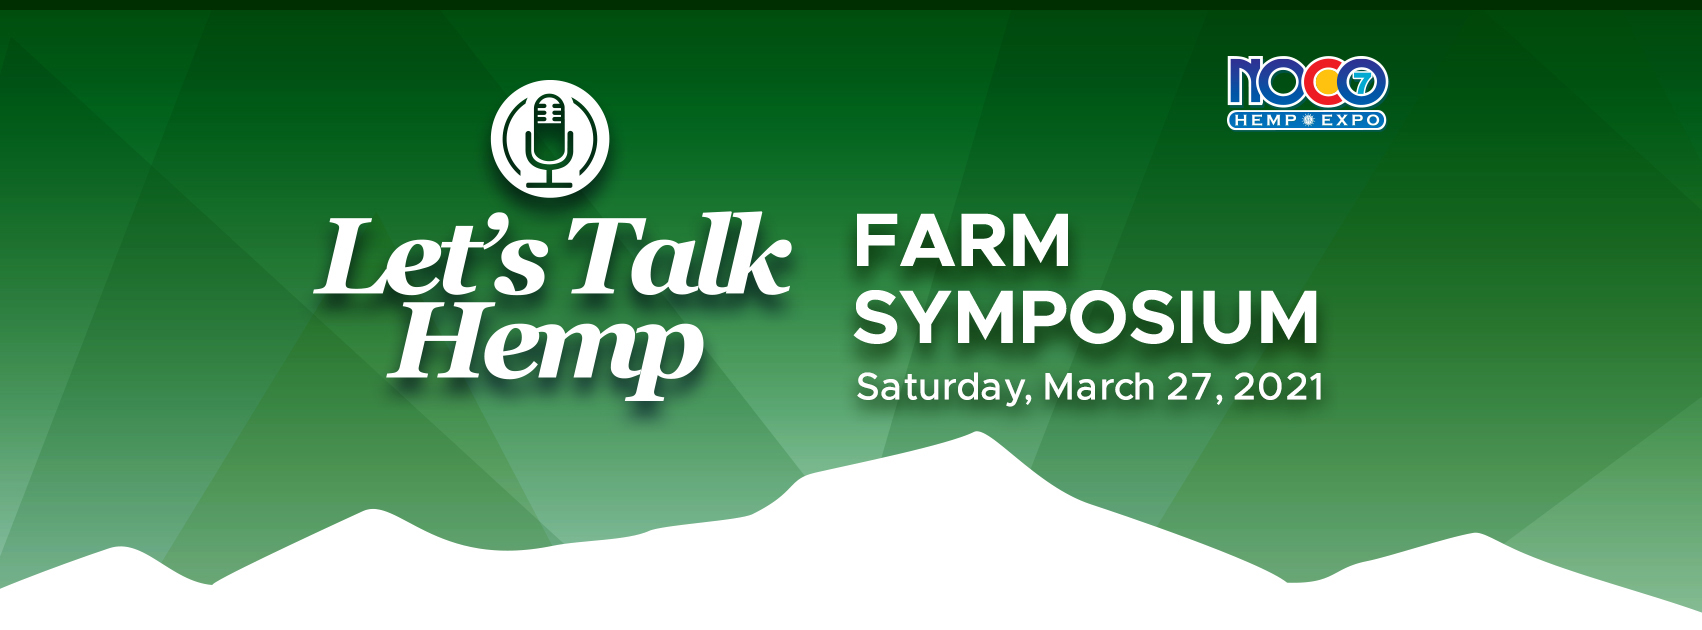 Let's Talk Hemp Farm Symposium